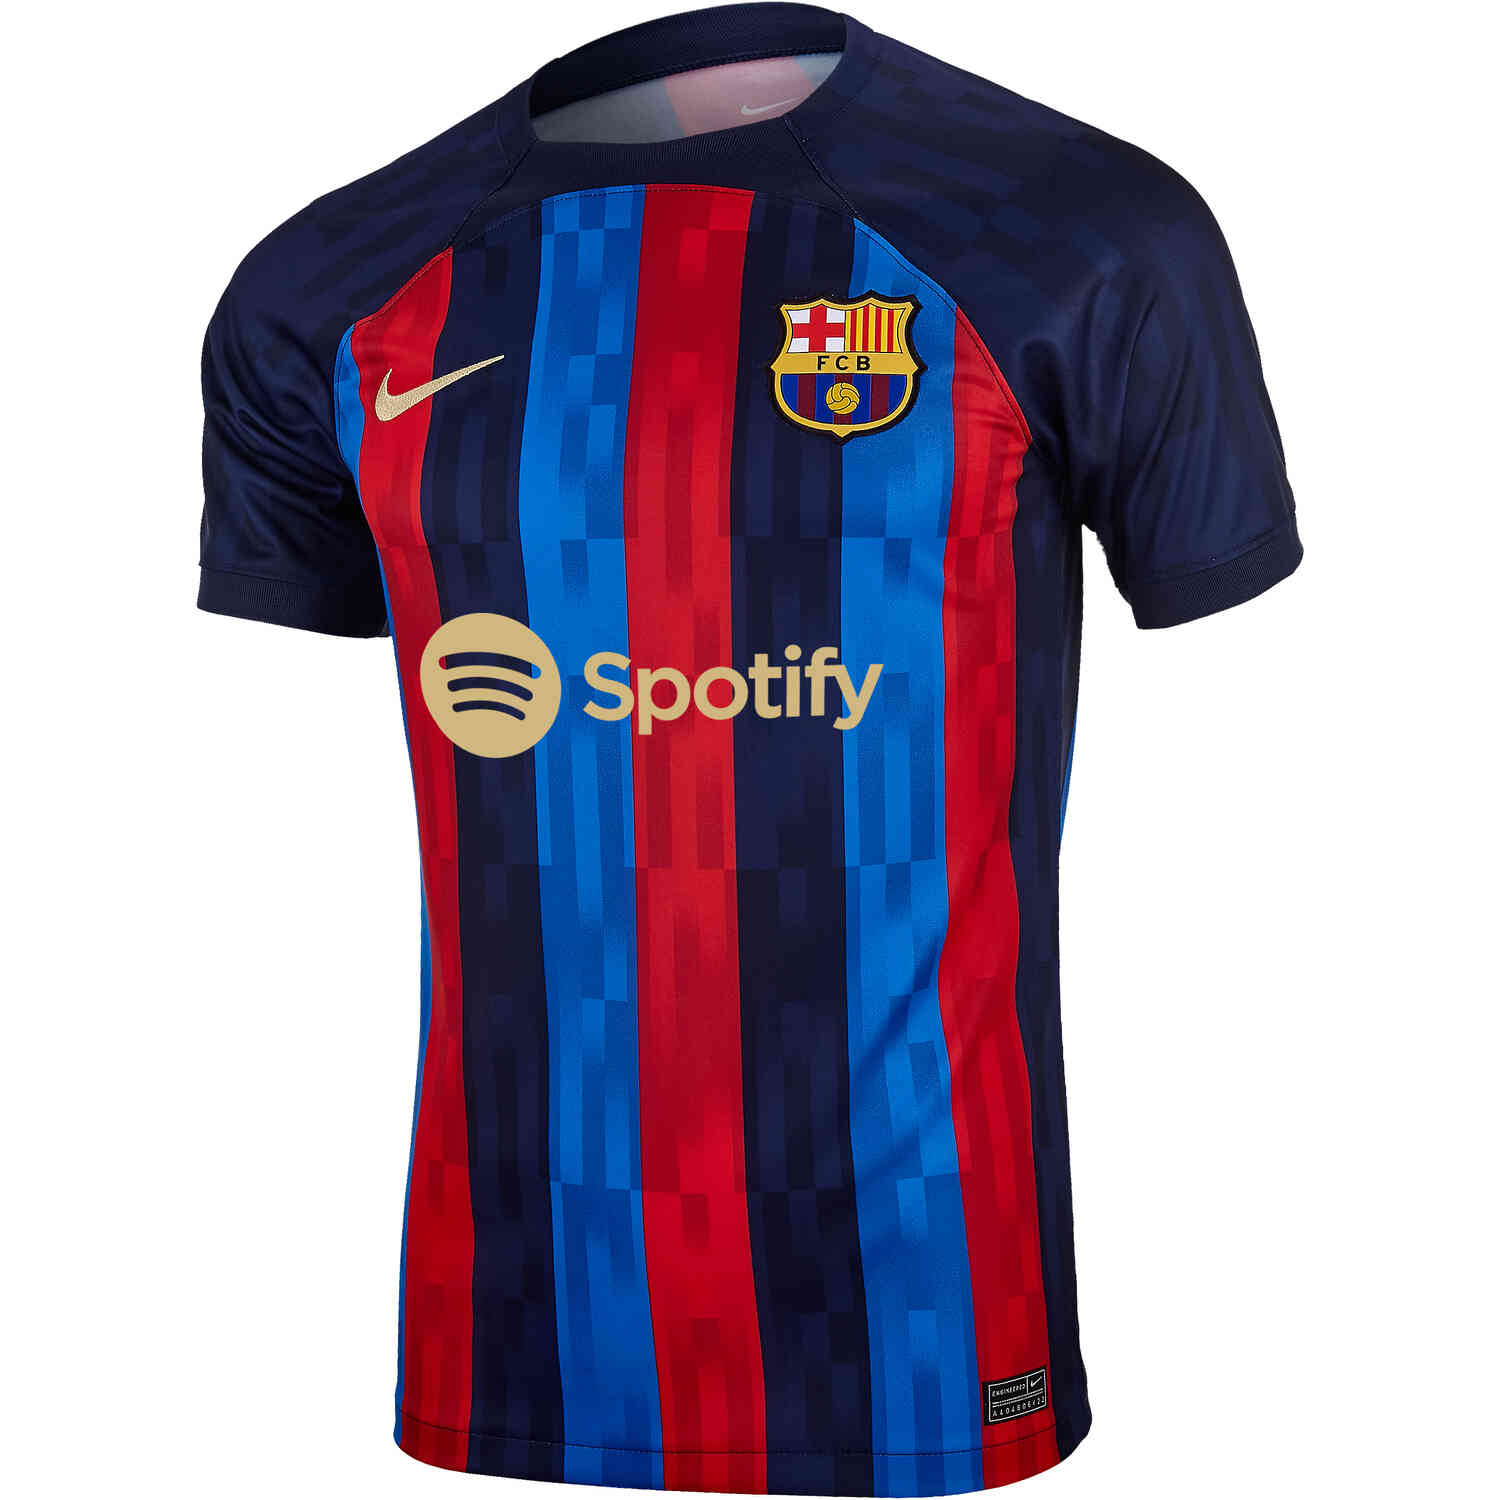 Kids Nike Barcelona - SoccerPro